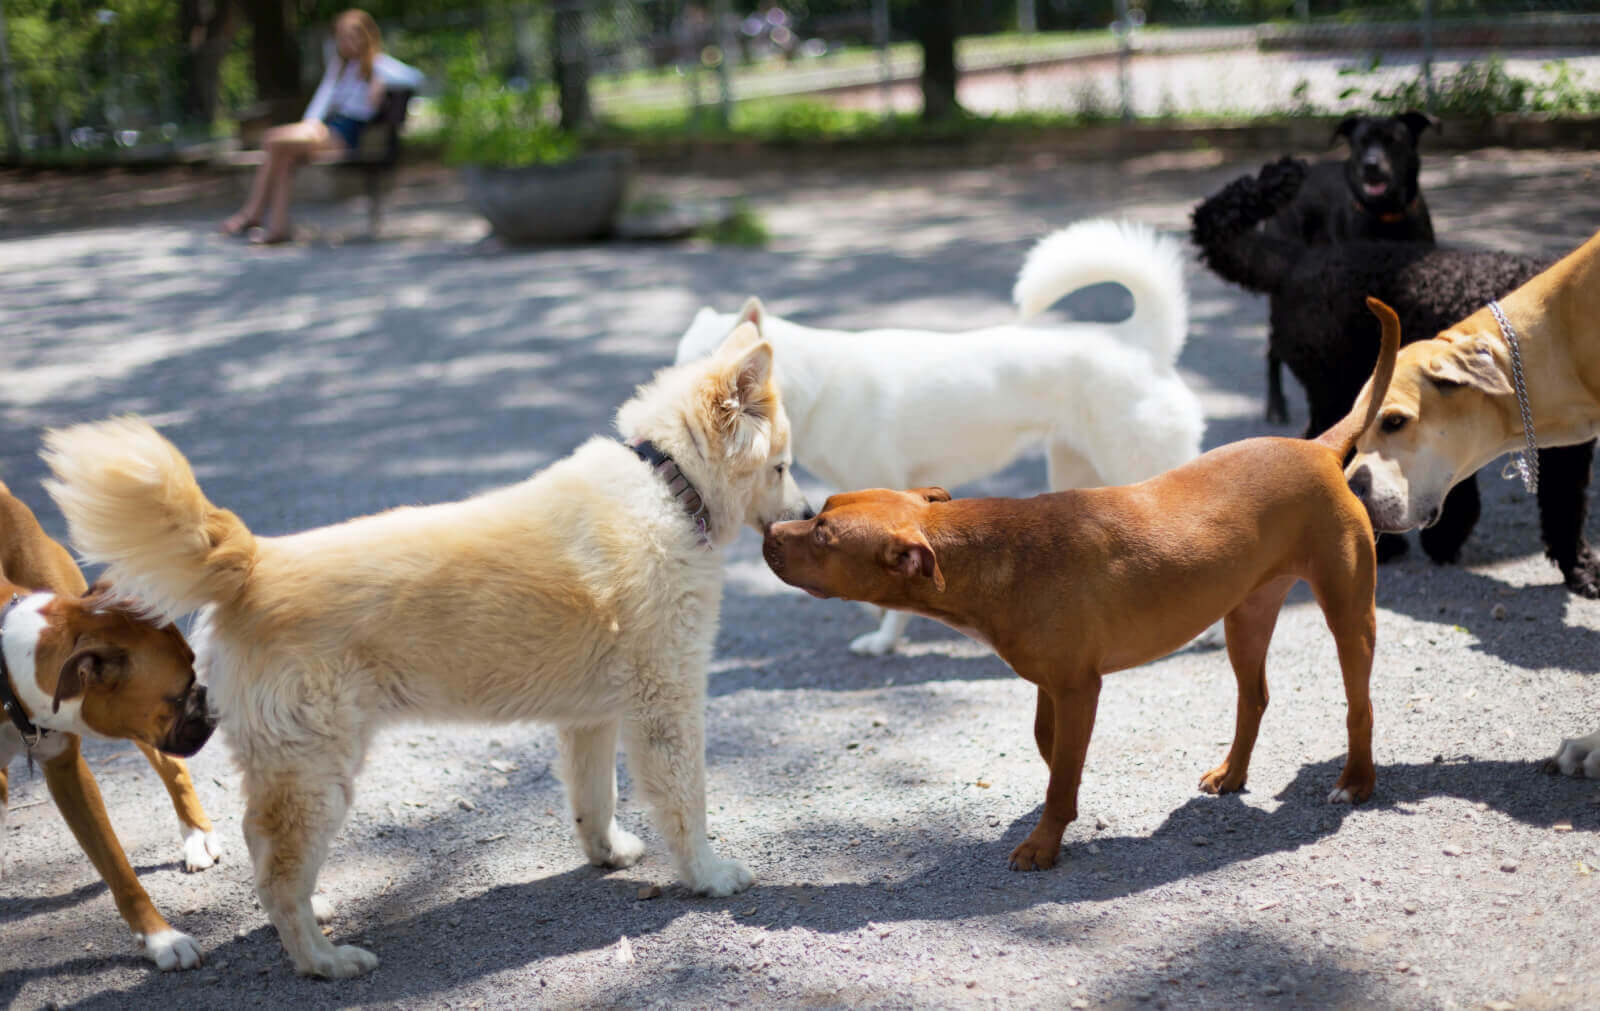 Ismerkedés kutyáknál - Egymás hátsóját is megszimatolják